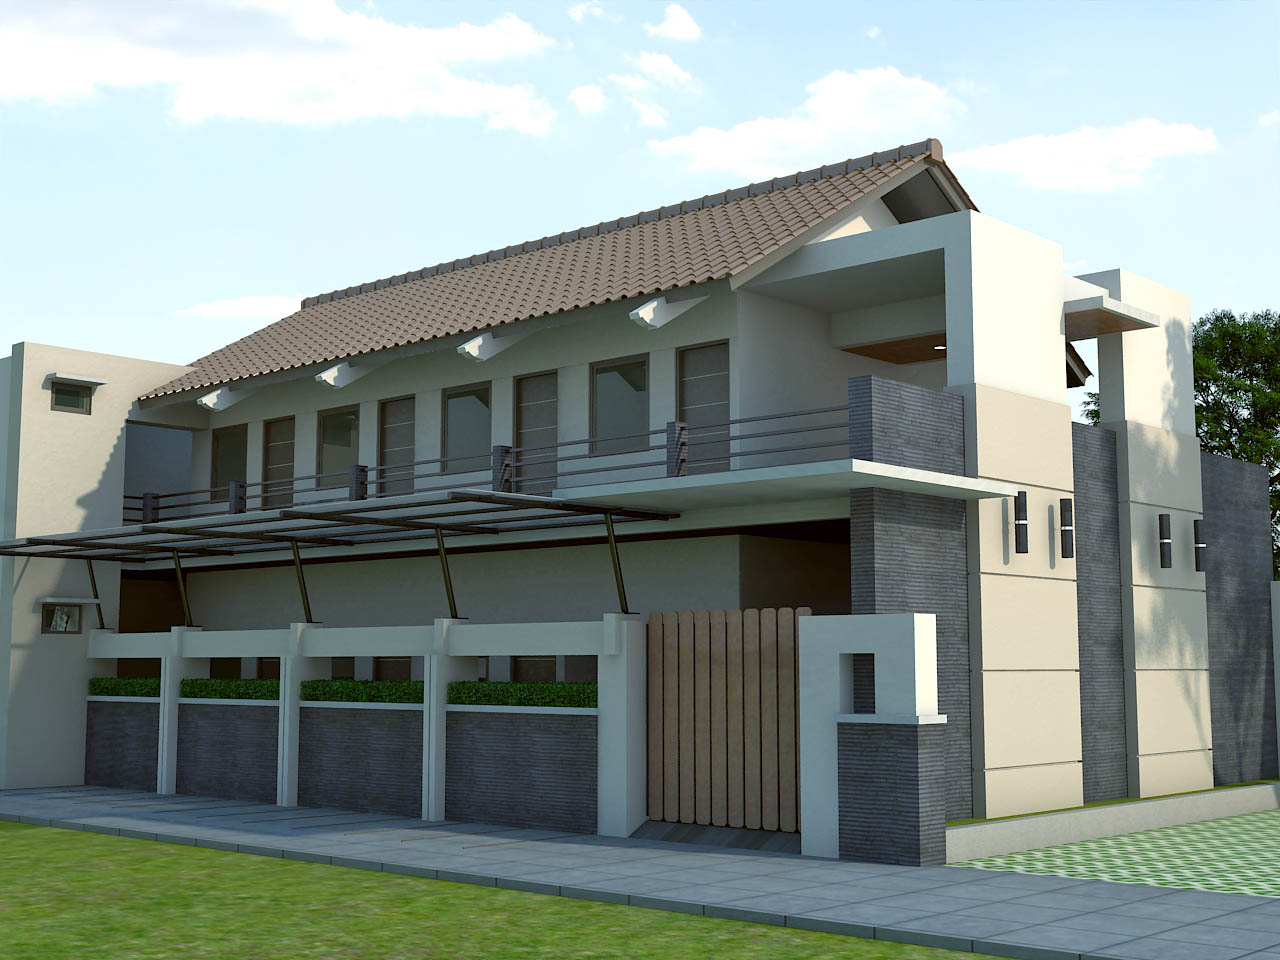 Desain Rumah Bali Modern 2 Lantai Rumah Minimalis Terbaru